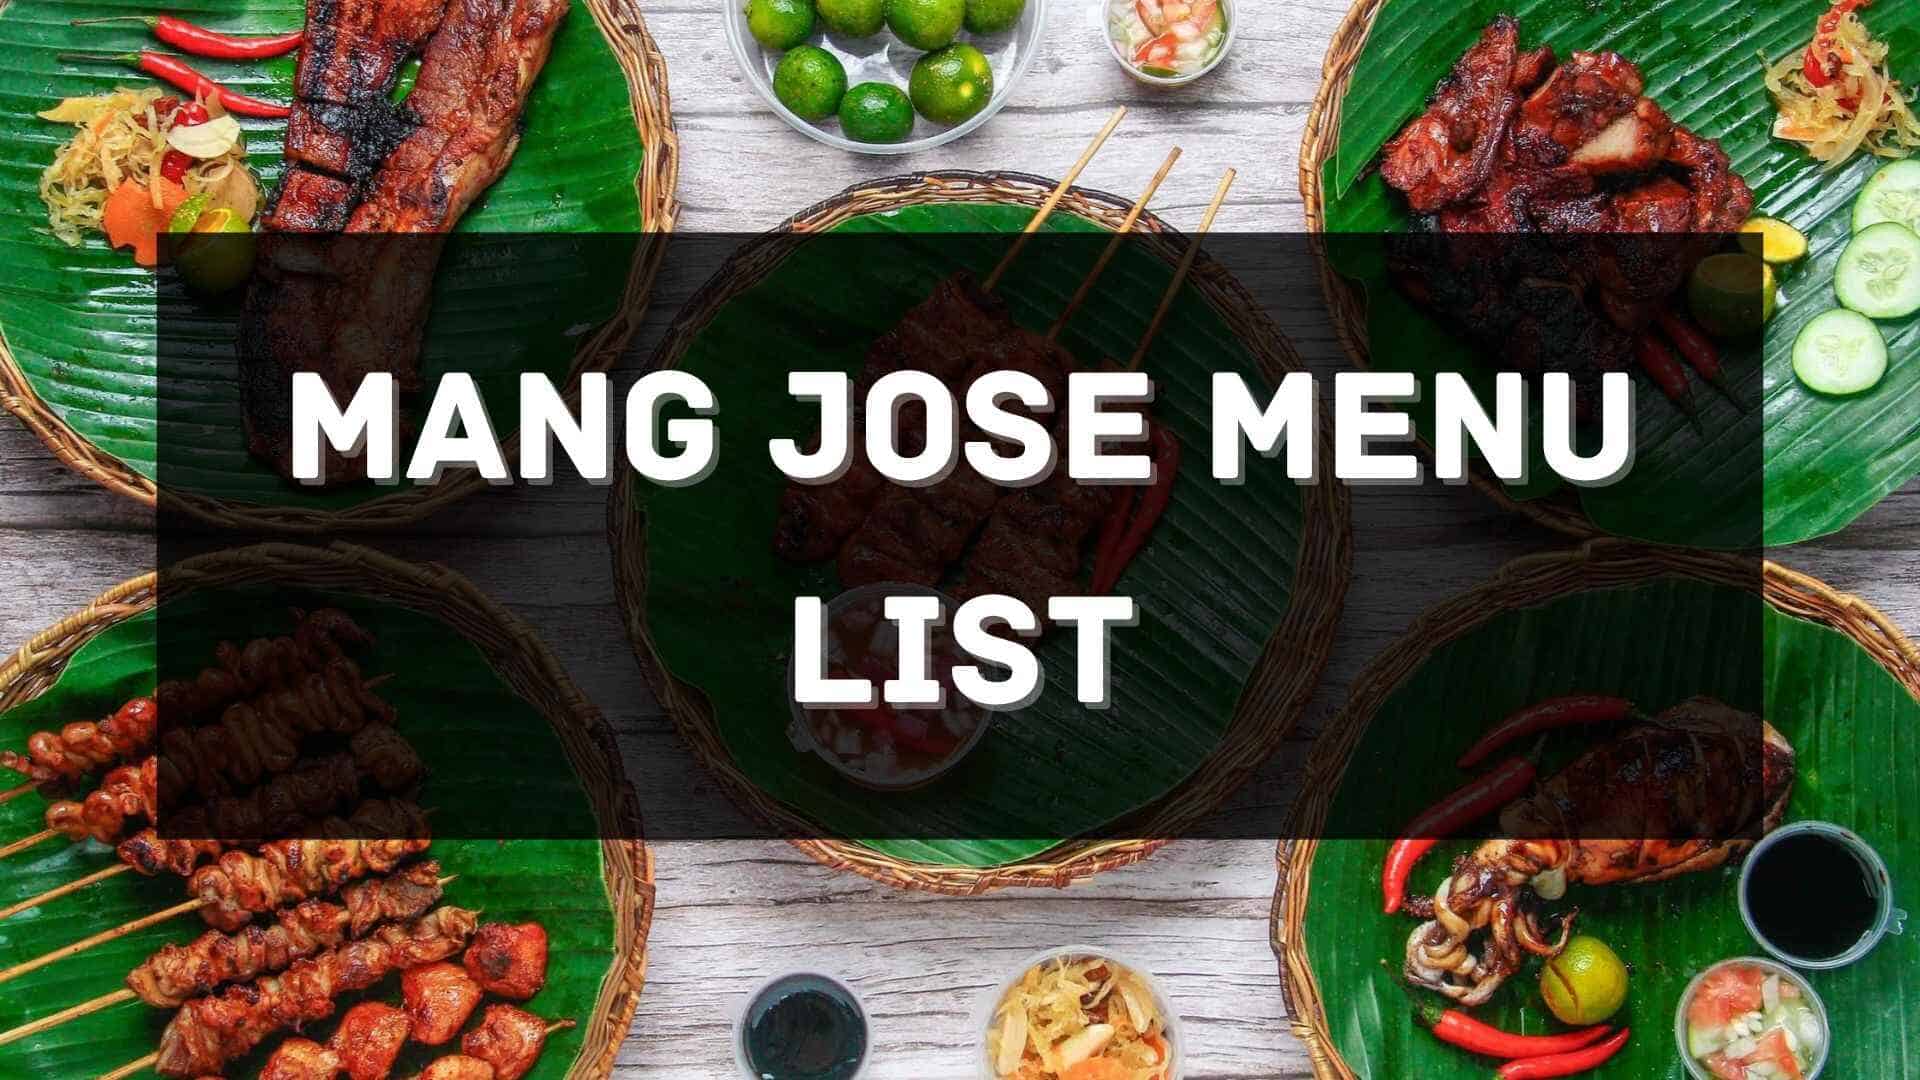 mang jose menu prices philippines